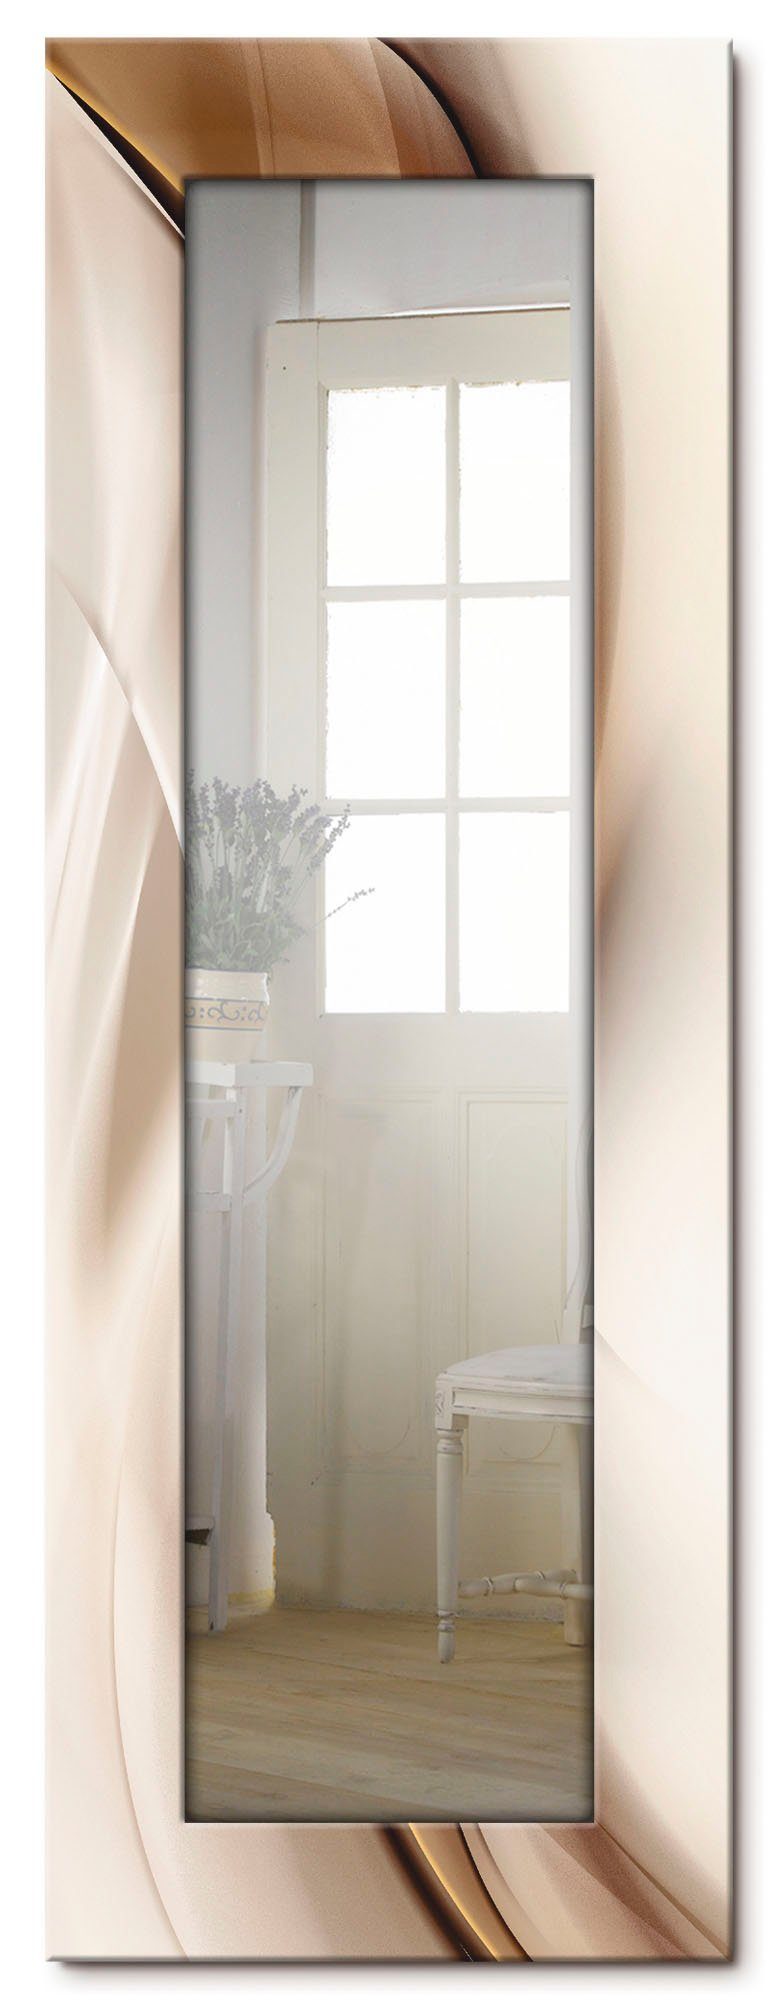 Artland Sierspiegel Bruine abstracte golf ingelijste spiegel voor het hele lichaam met motiefrand, geschikt voor kleine, smalle hal, halspiegel, mirror spiegel omrand om op te hang